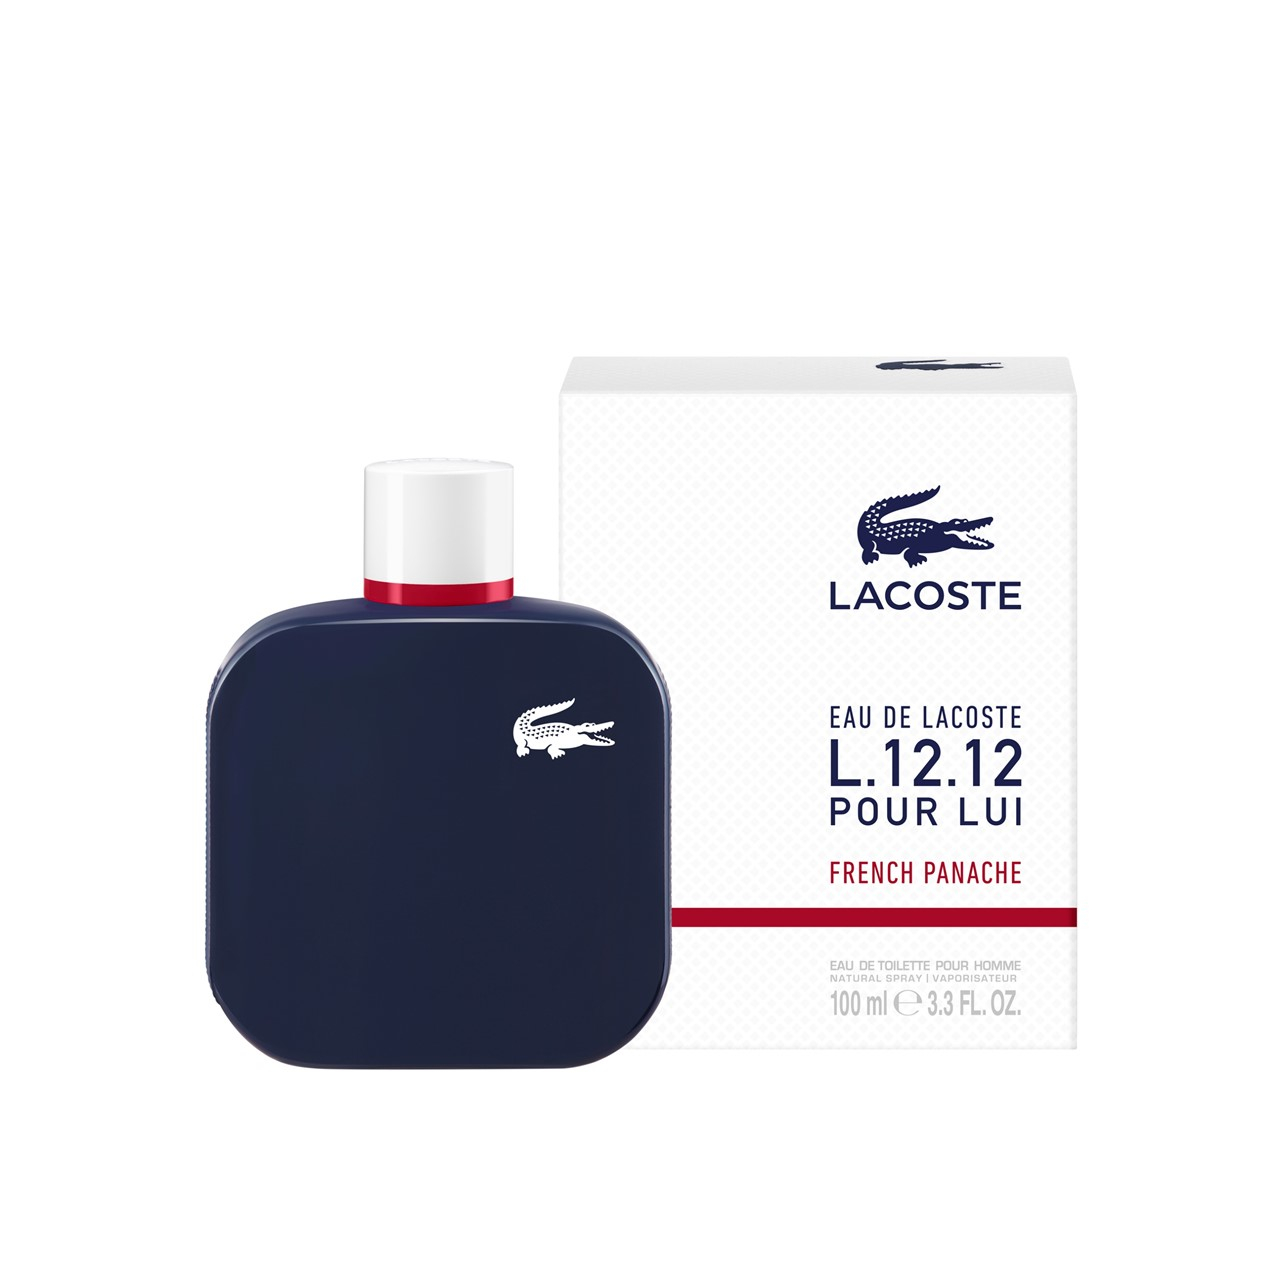 Lacoste L.12.12 Pour Lui French Panache Eau de Toilette 100ml (3.4fl oz)